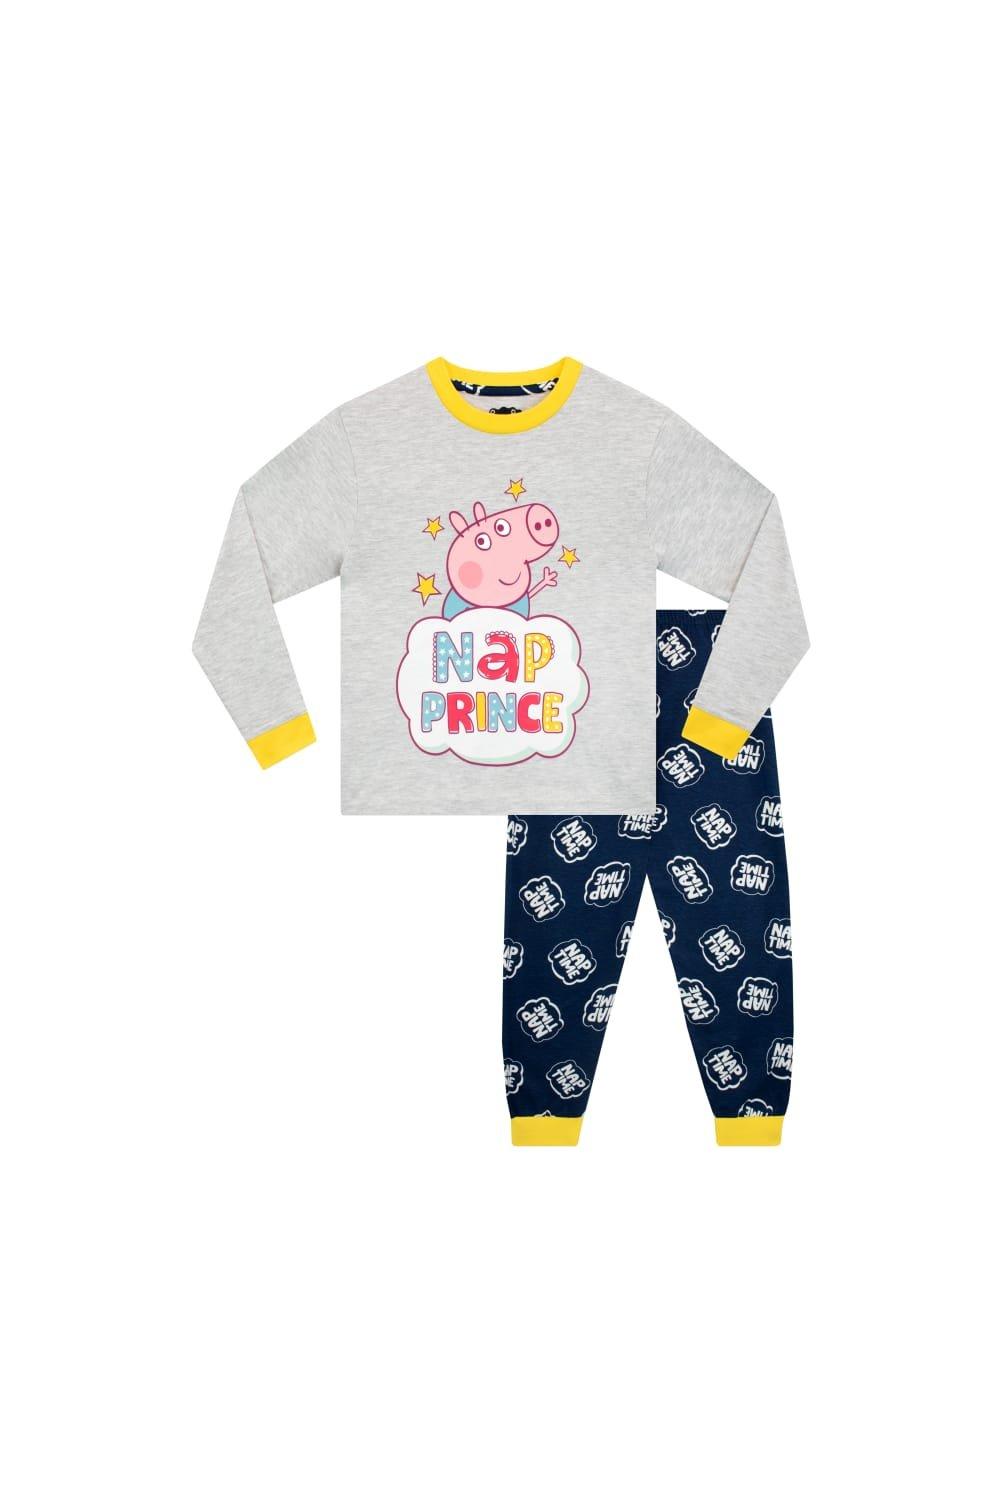 George Pig Nap Prince Pyjamas